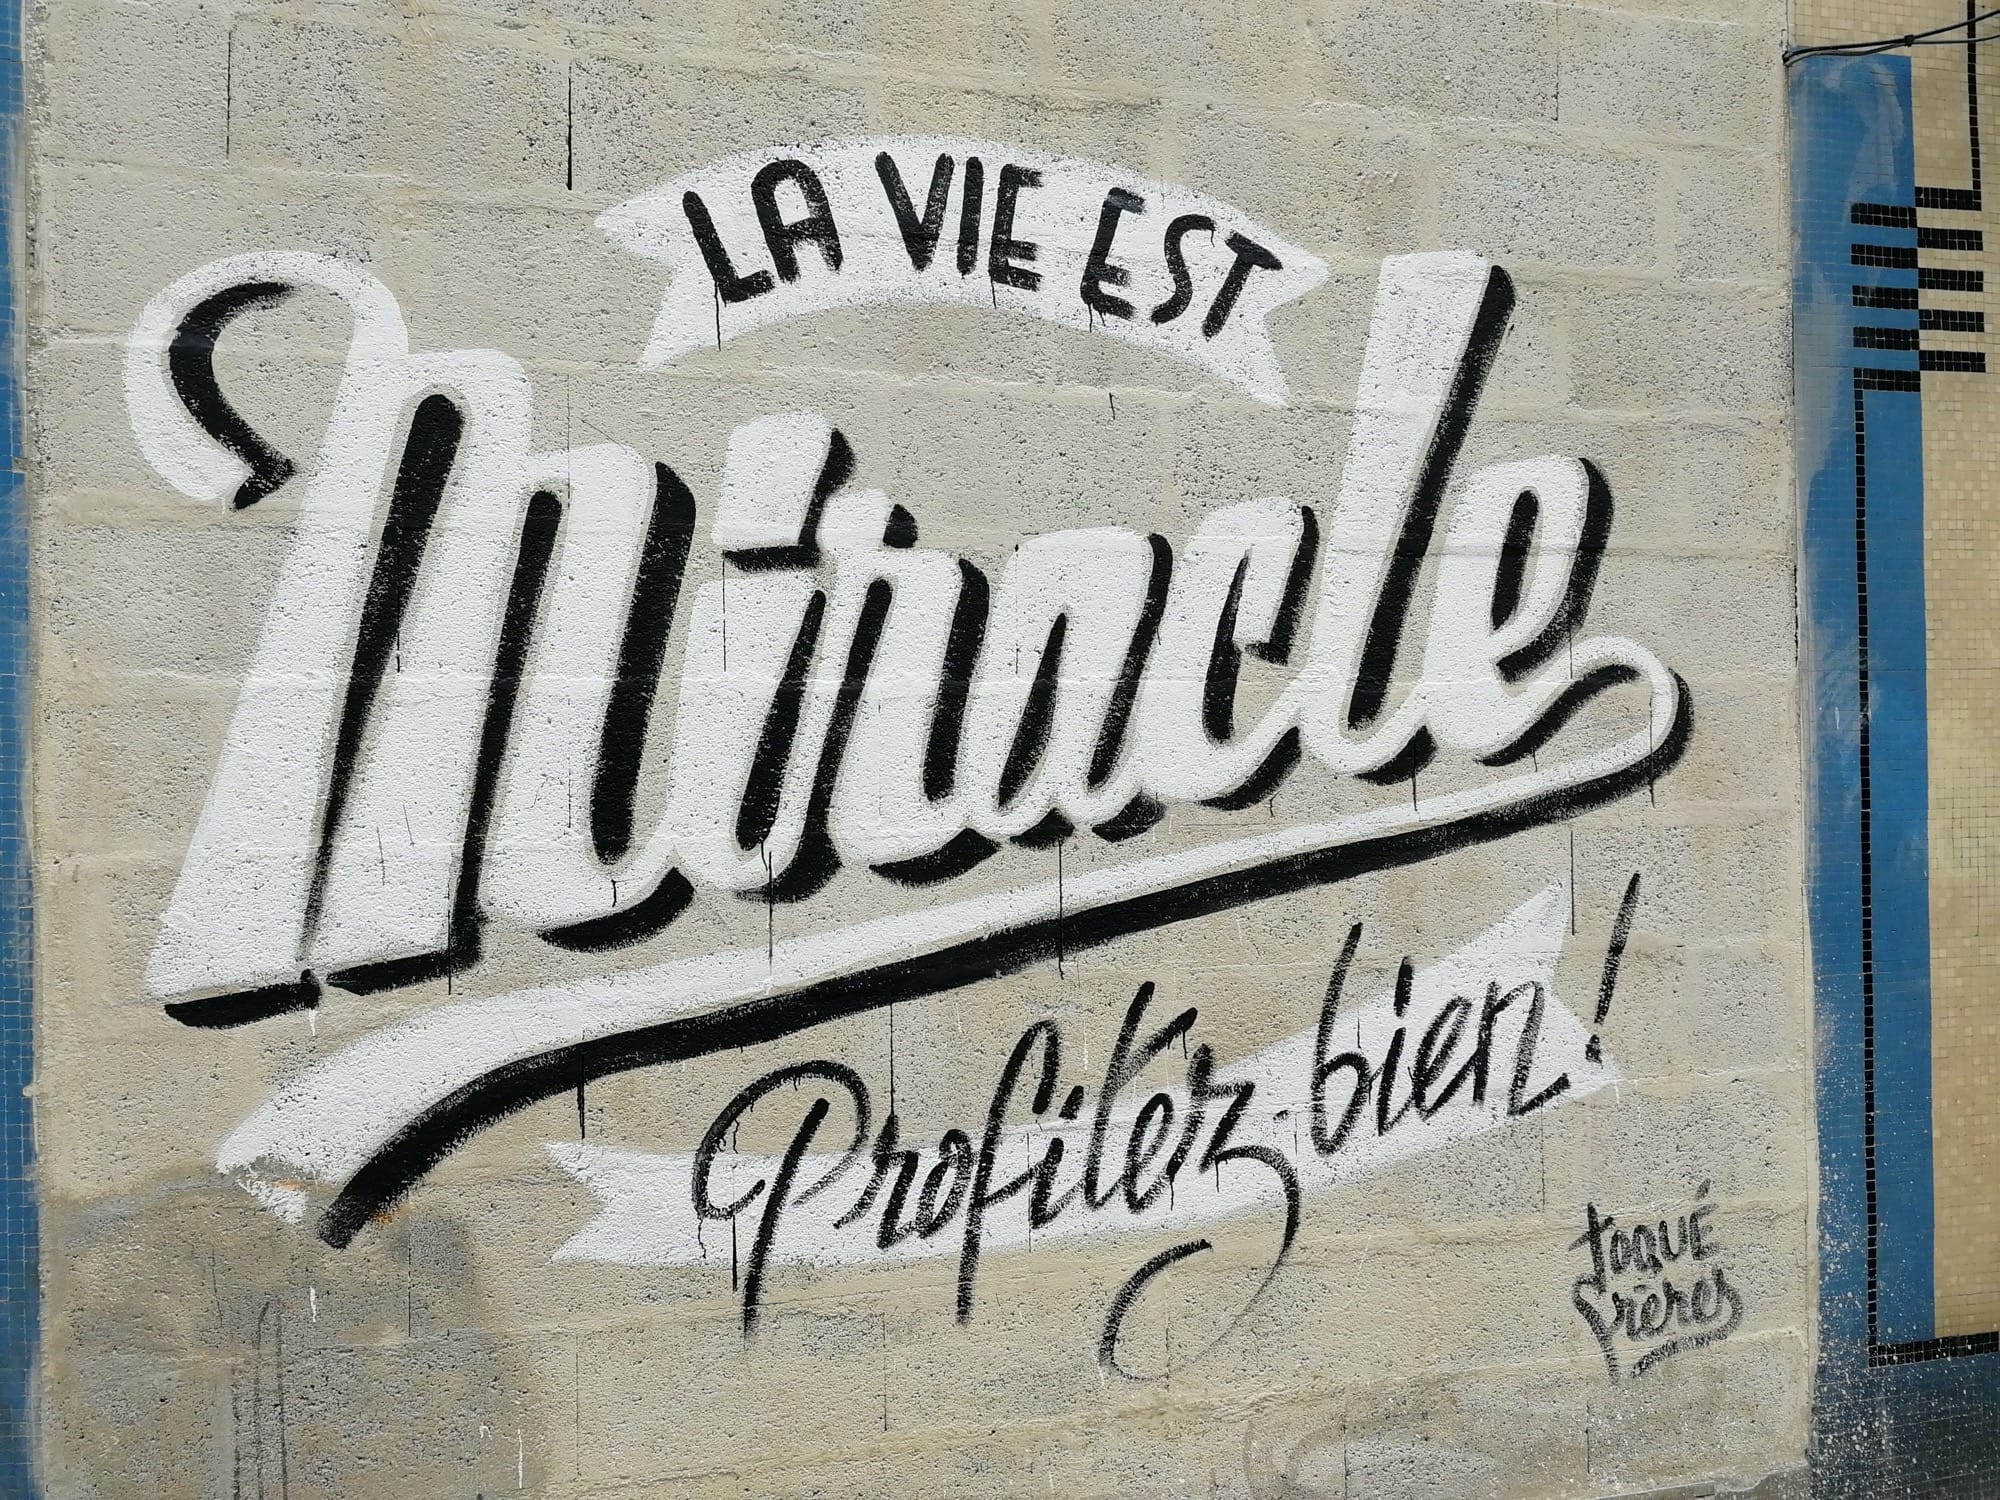 Graffiti 1523 La vie est miracle, profitez bien ! de Toqué frères capturé par Rabot à Nantes France